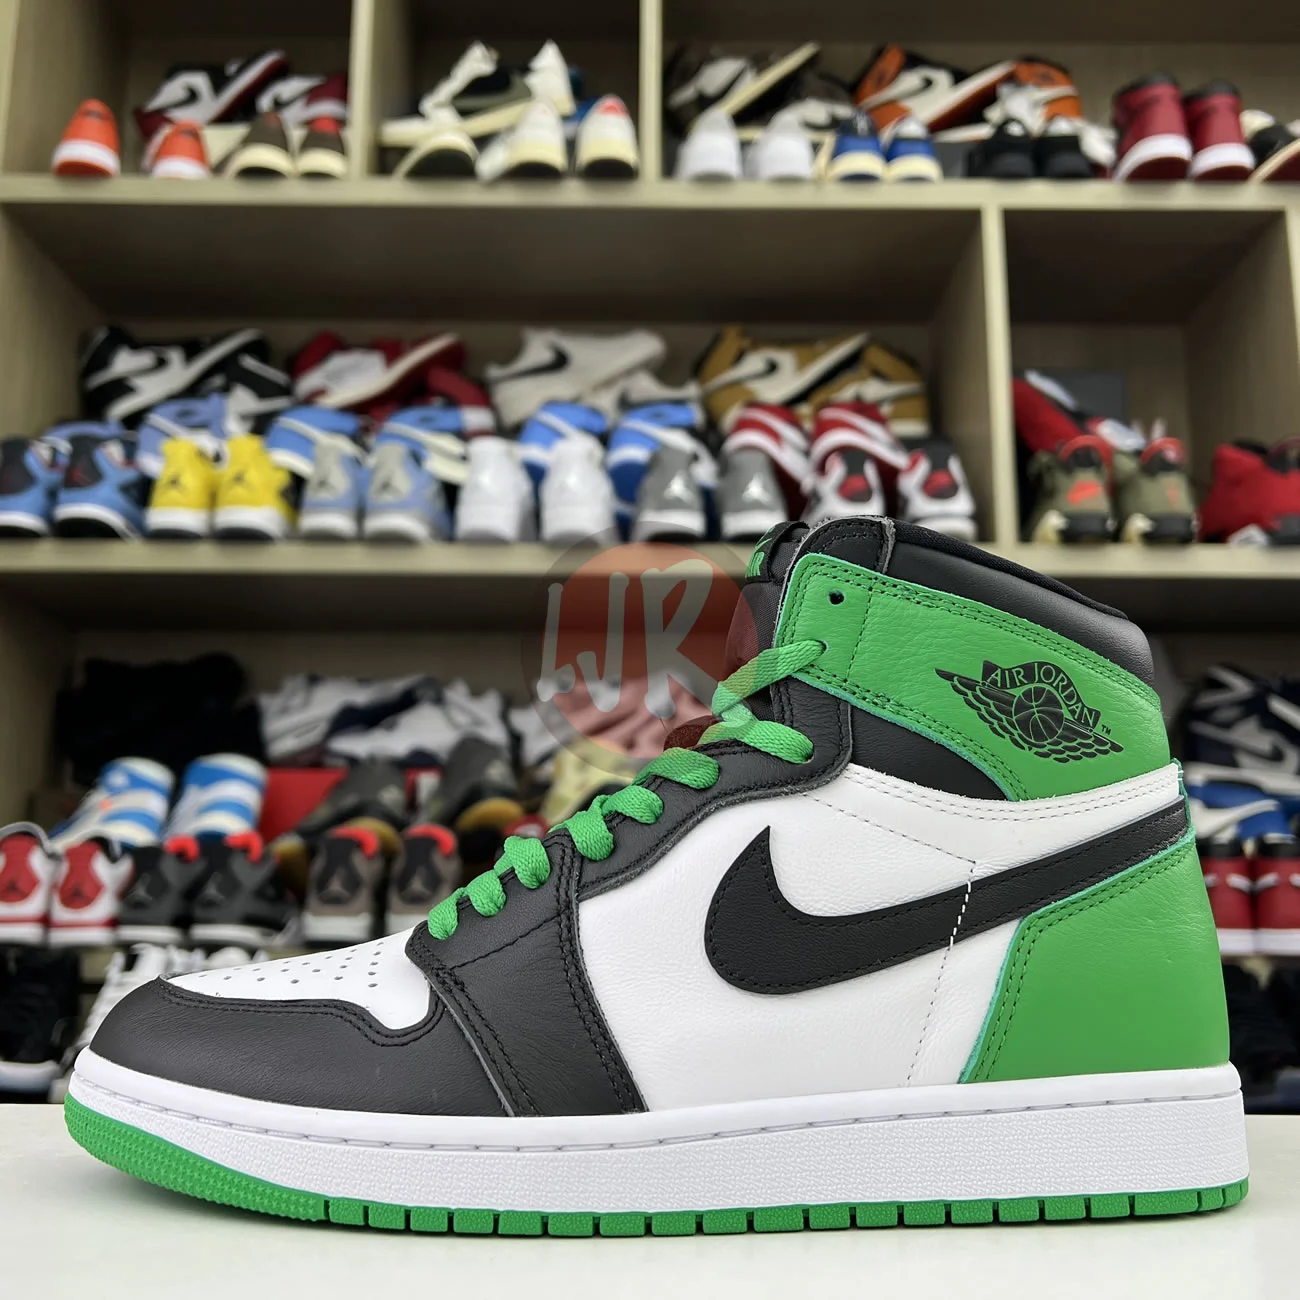 Air Jordan 1 Retro High Og Lucky Green Dz5485 031 Ljr Sneakers (1) - bc-ljr.net